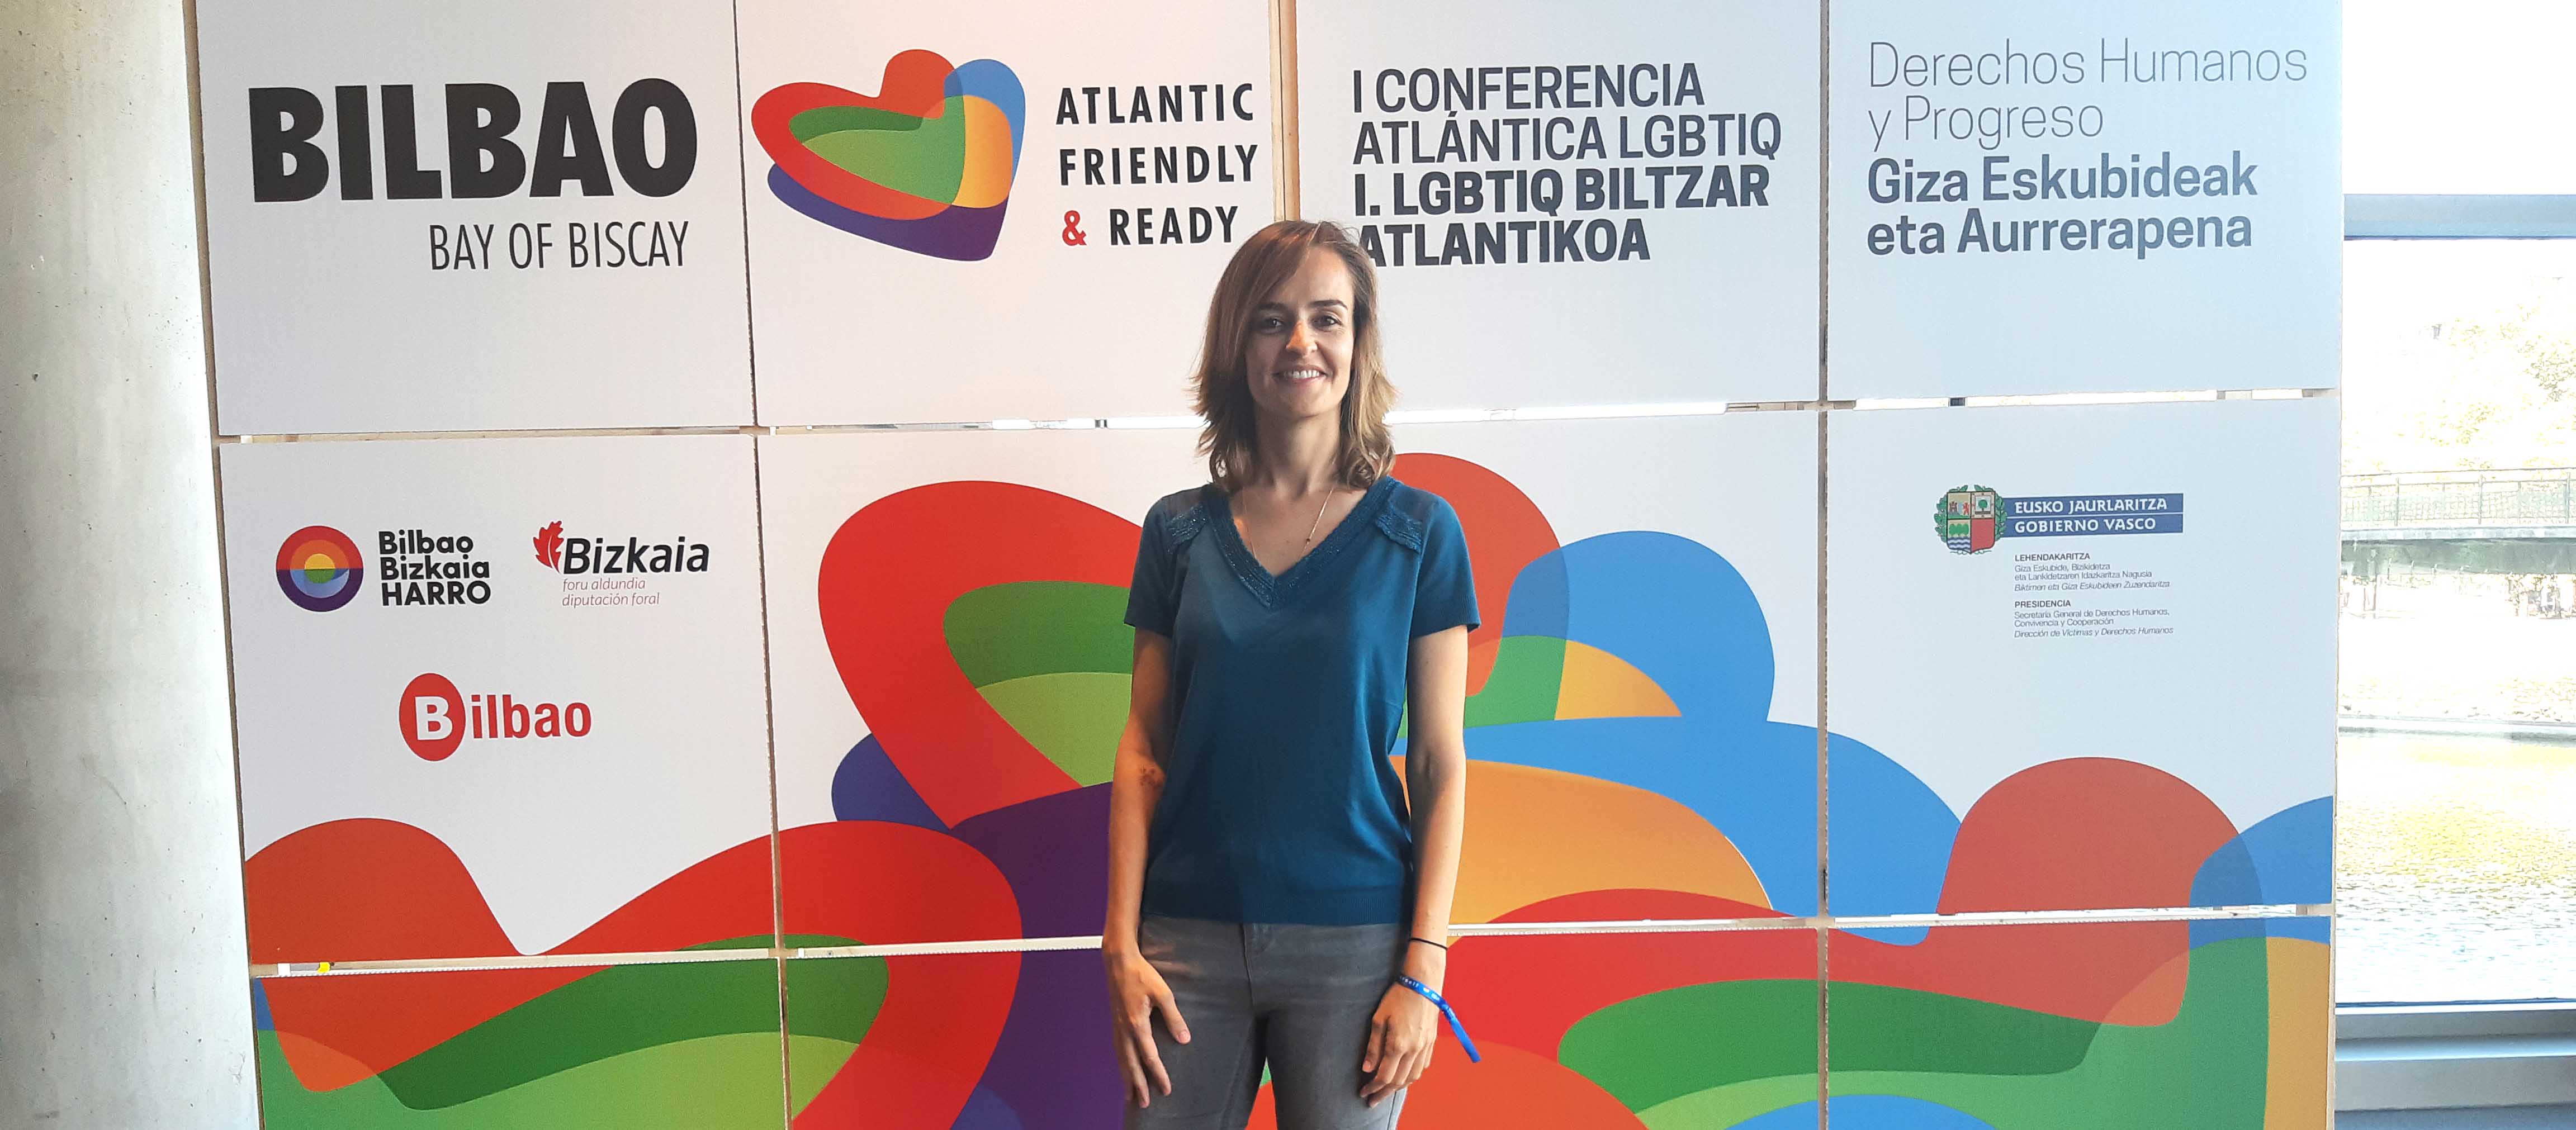 Ízaro Amilibia de BBVA participa en la Conferencia Atlántica LGTBI en Bilbao